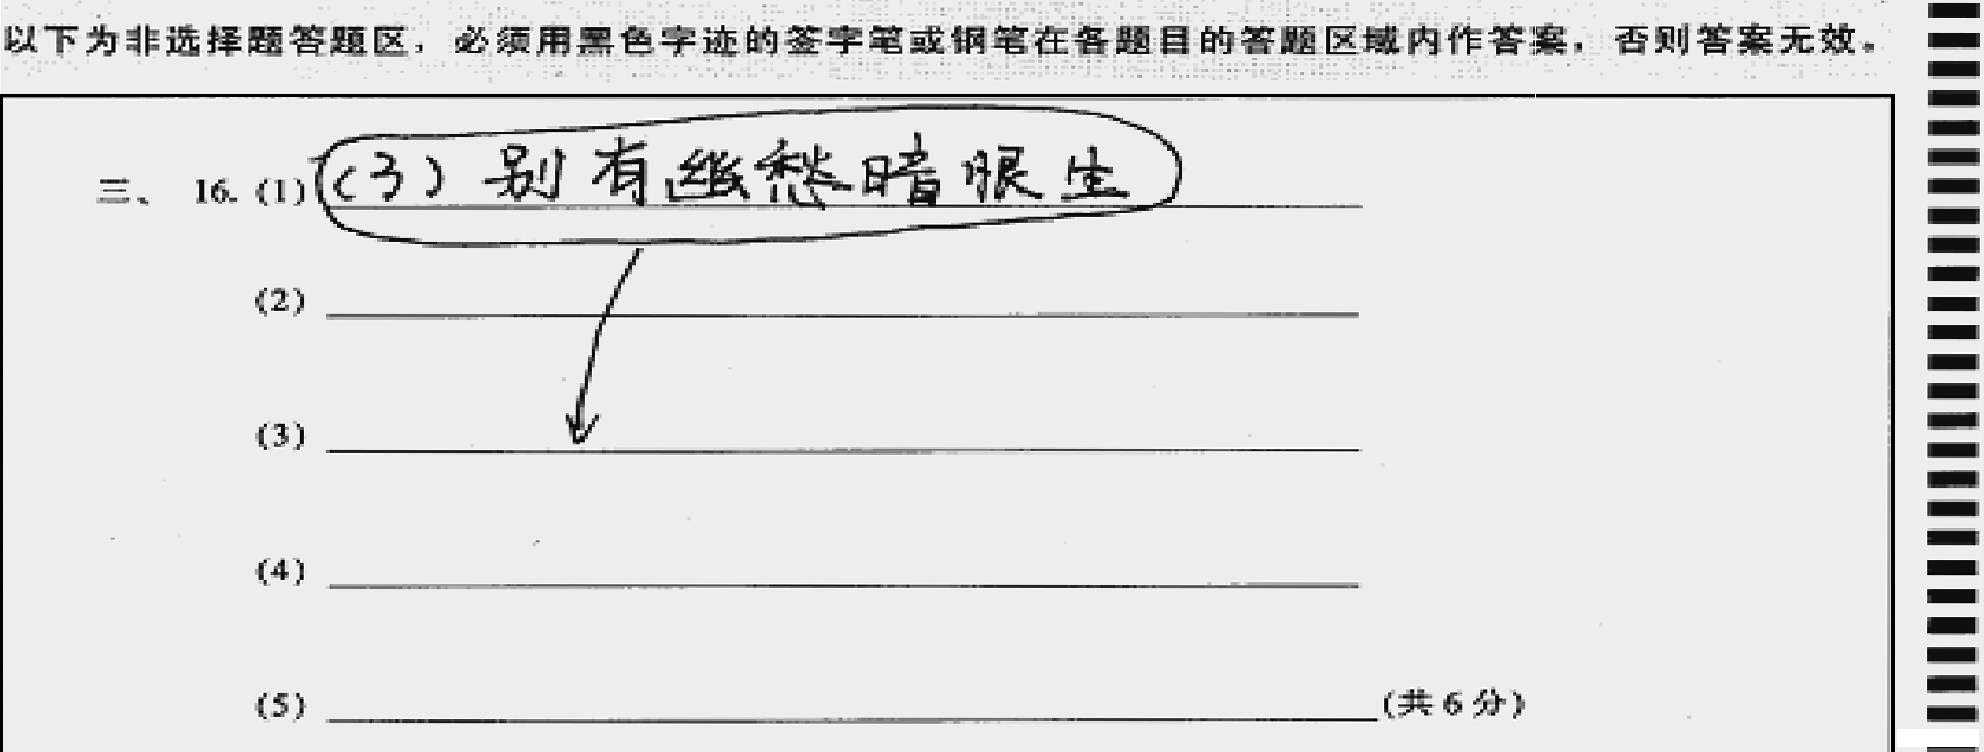 【中考须知】2014广州中考答题卡填涂及答题的正确方法4